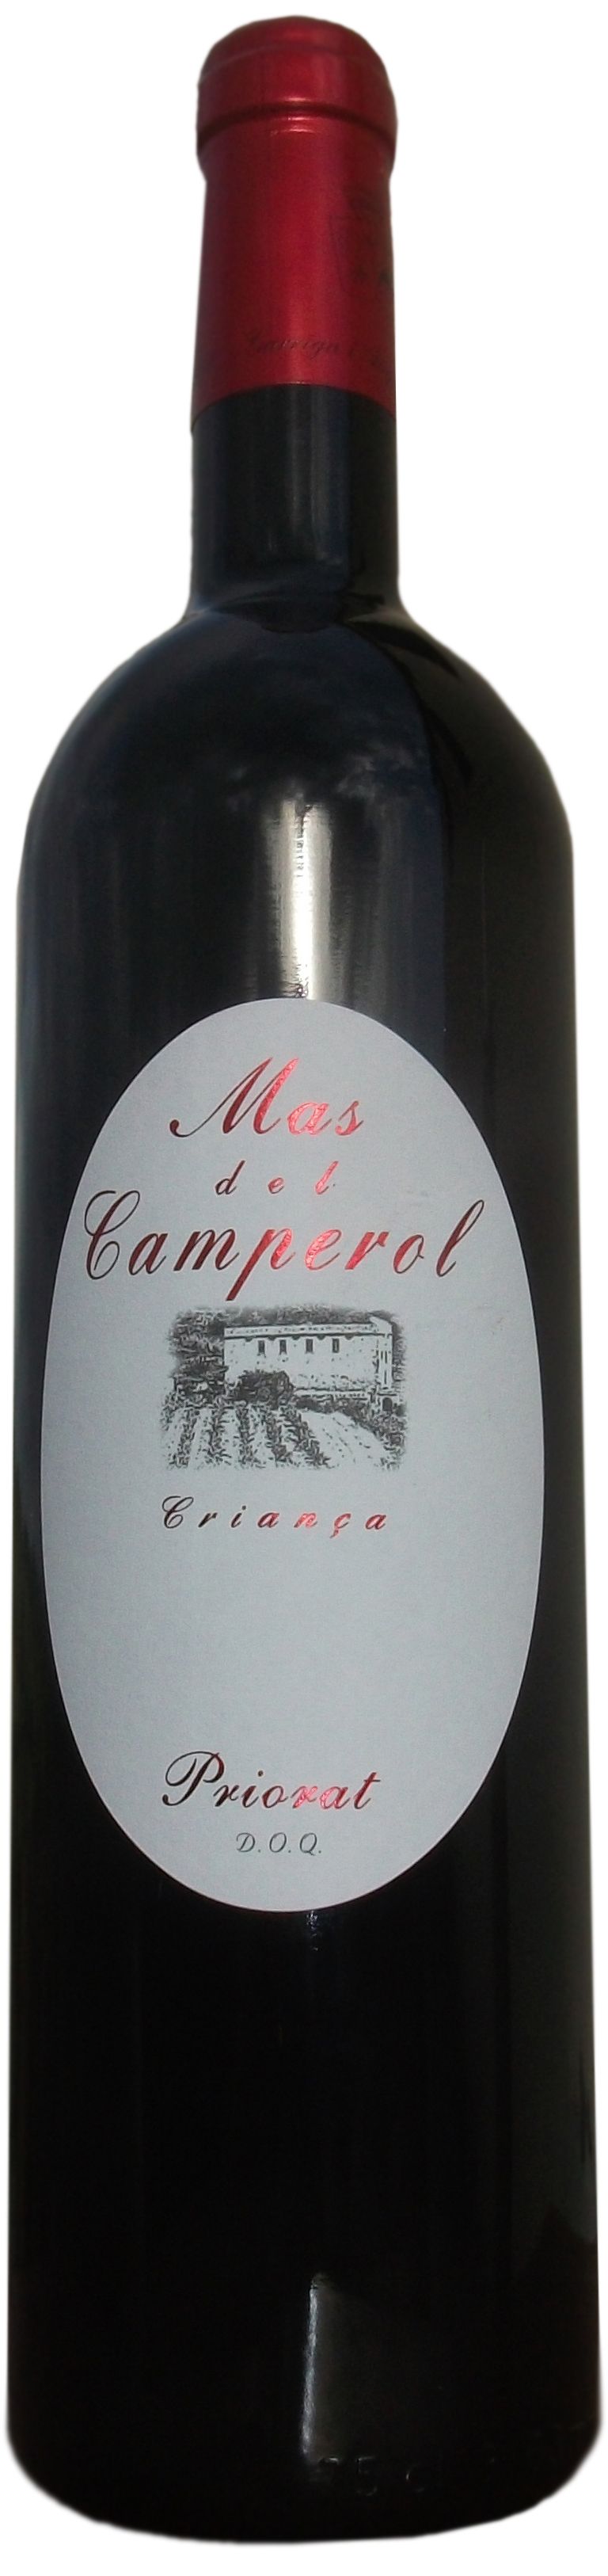 Mas Garrian, Mas Del Camperol, 2003